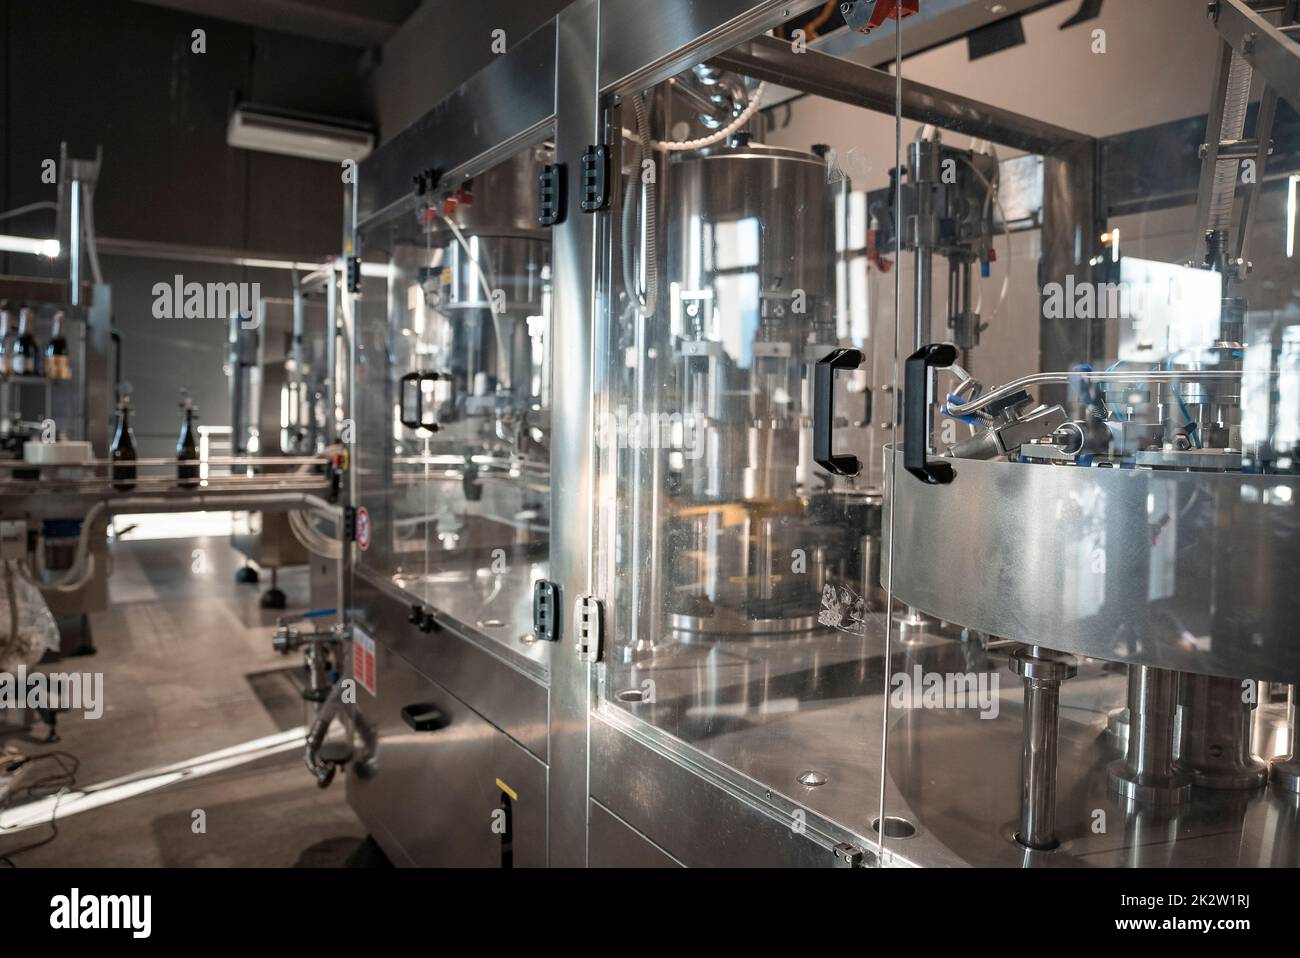 Automatic wine filling metallic machinery at wine making winery Stock Photo